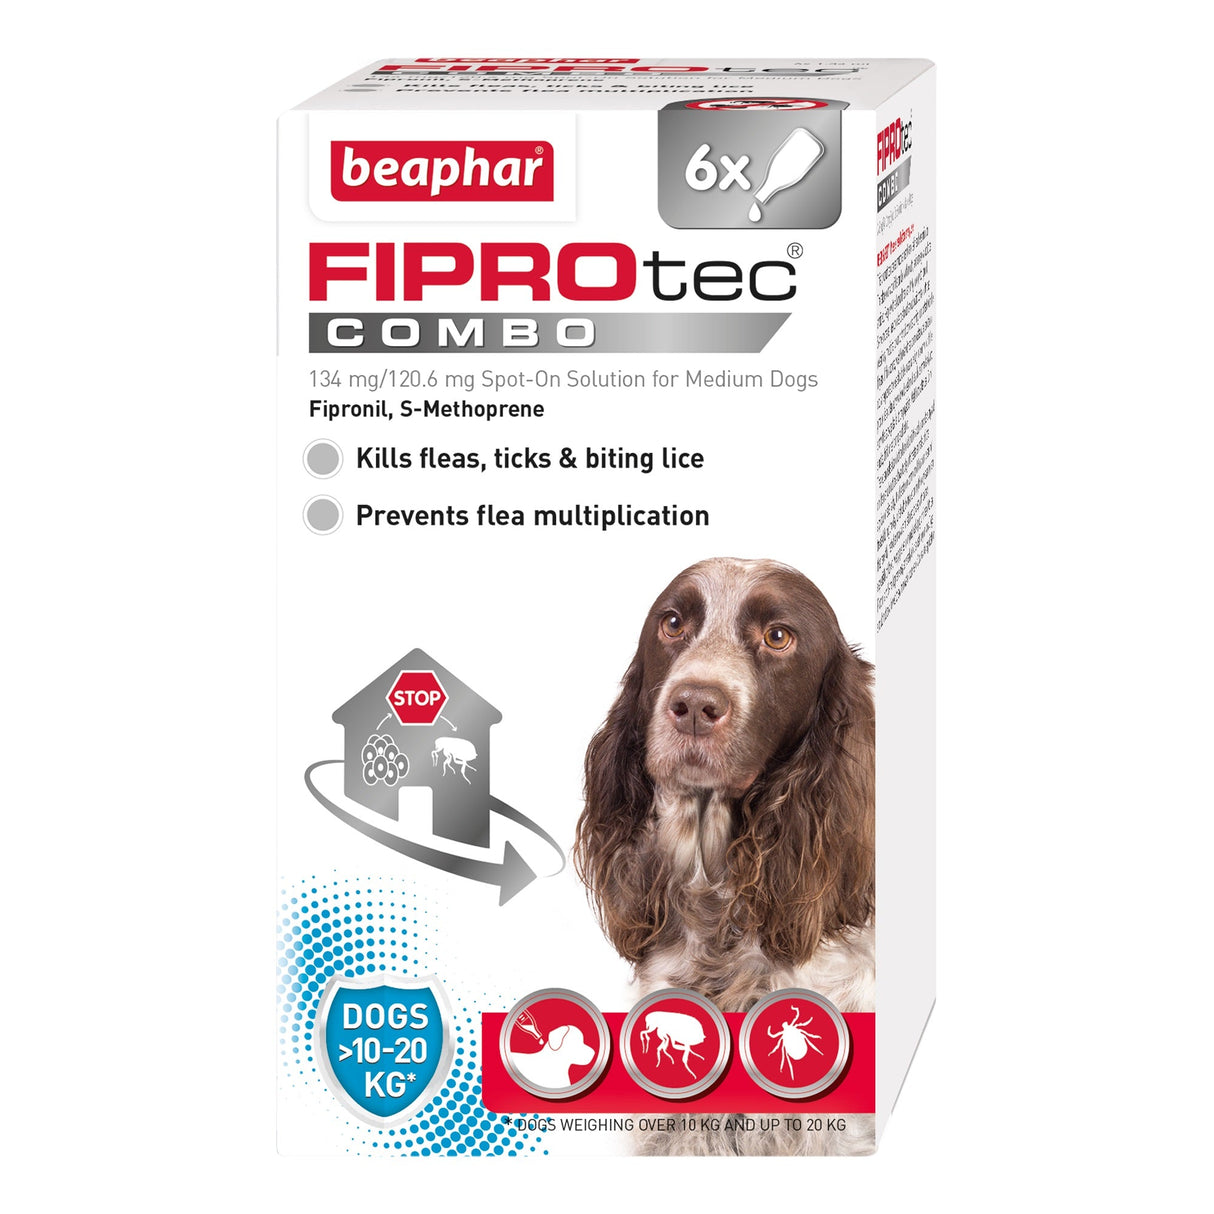 Beaphar FIPROtec COMBO Flea & Tick Spot On for Medium Dogs, Beaphar, 6 pipettes x 4